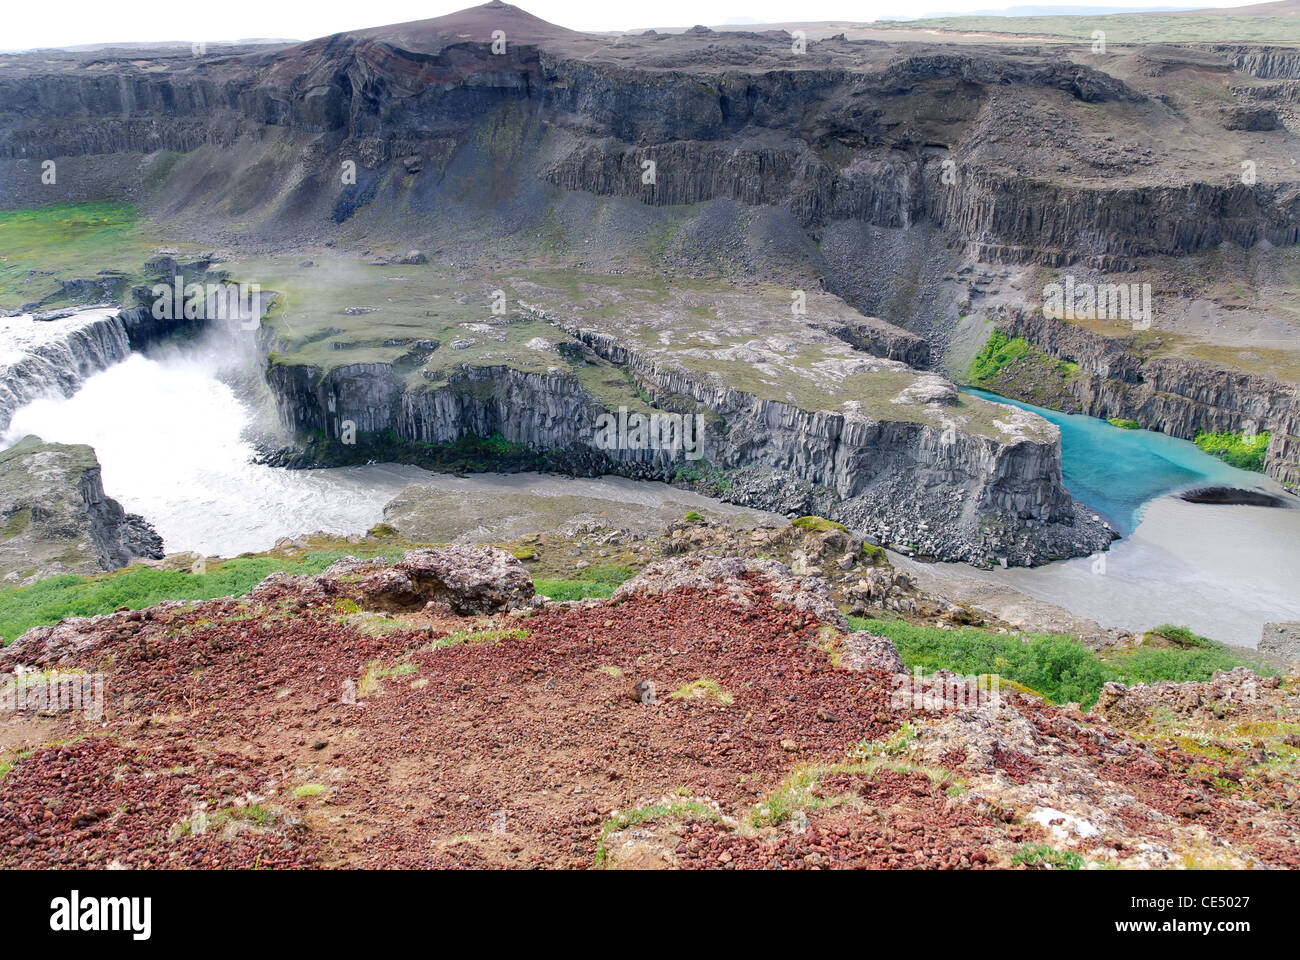 Pour nettoyer la boue de la rivière fleuve rencontre Gulfoss en Islande Banque D'Images